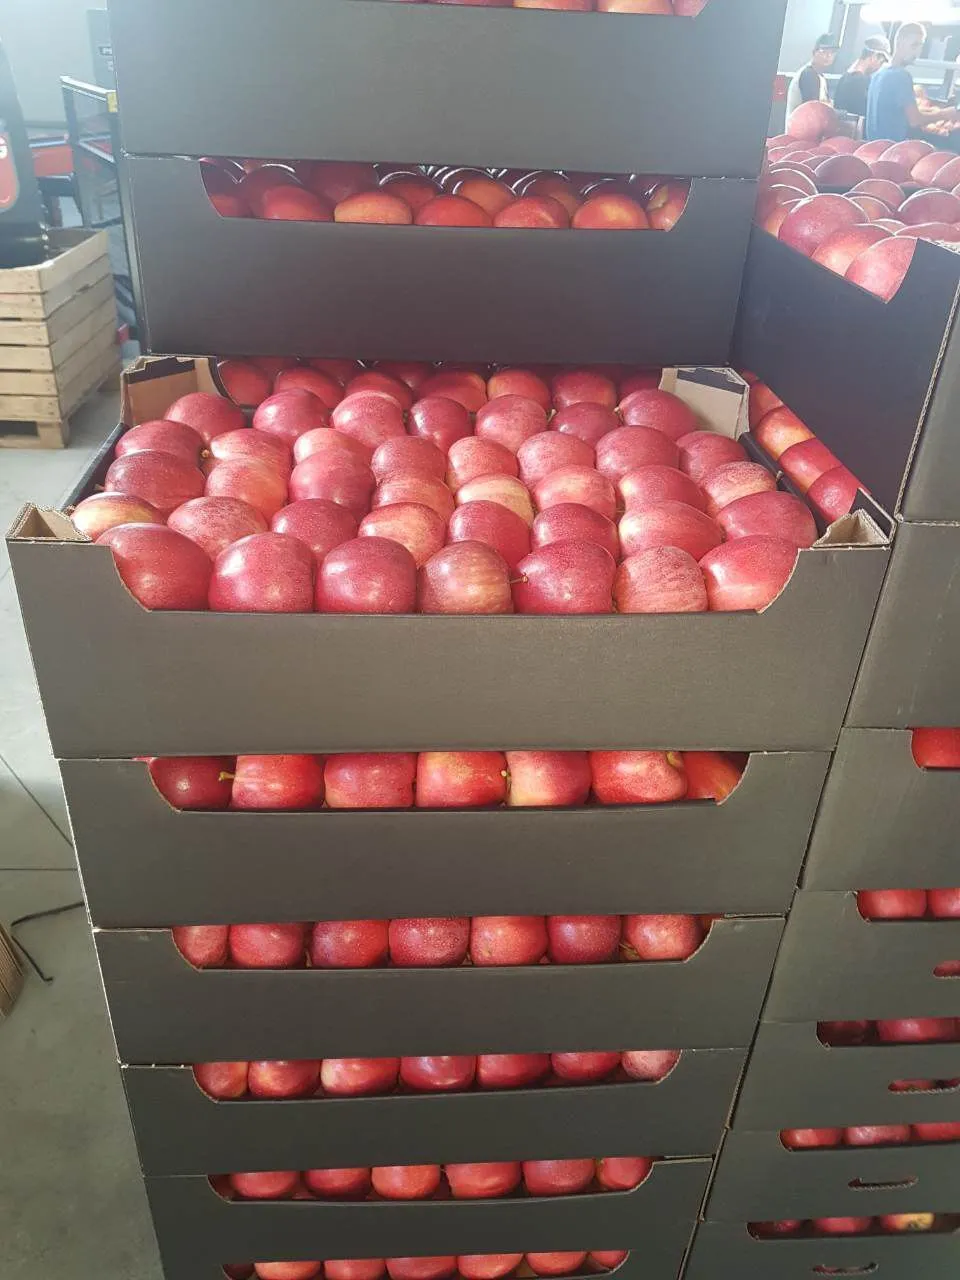 продаем Молдавские яблоки оптом. в Молдавии